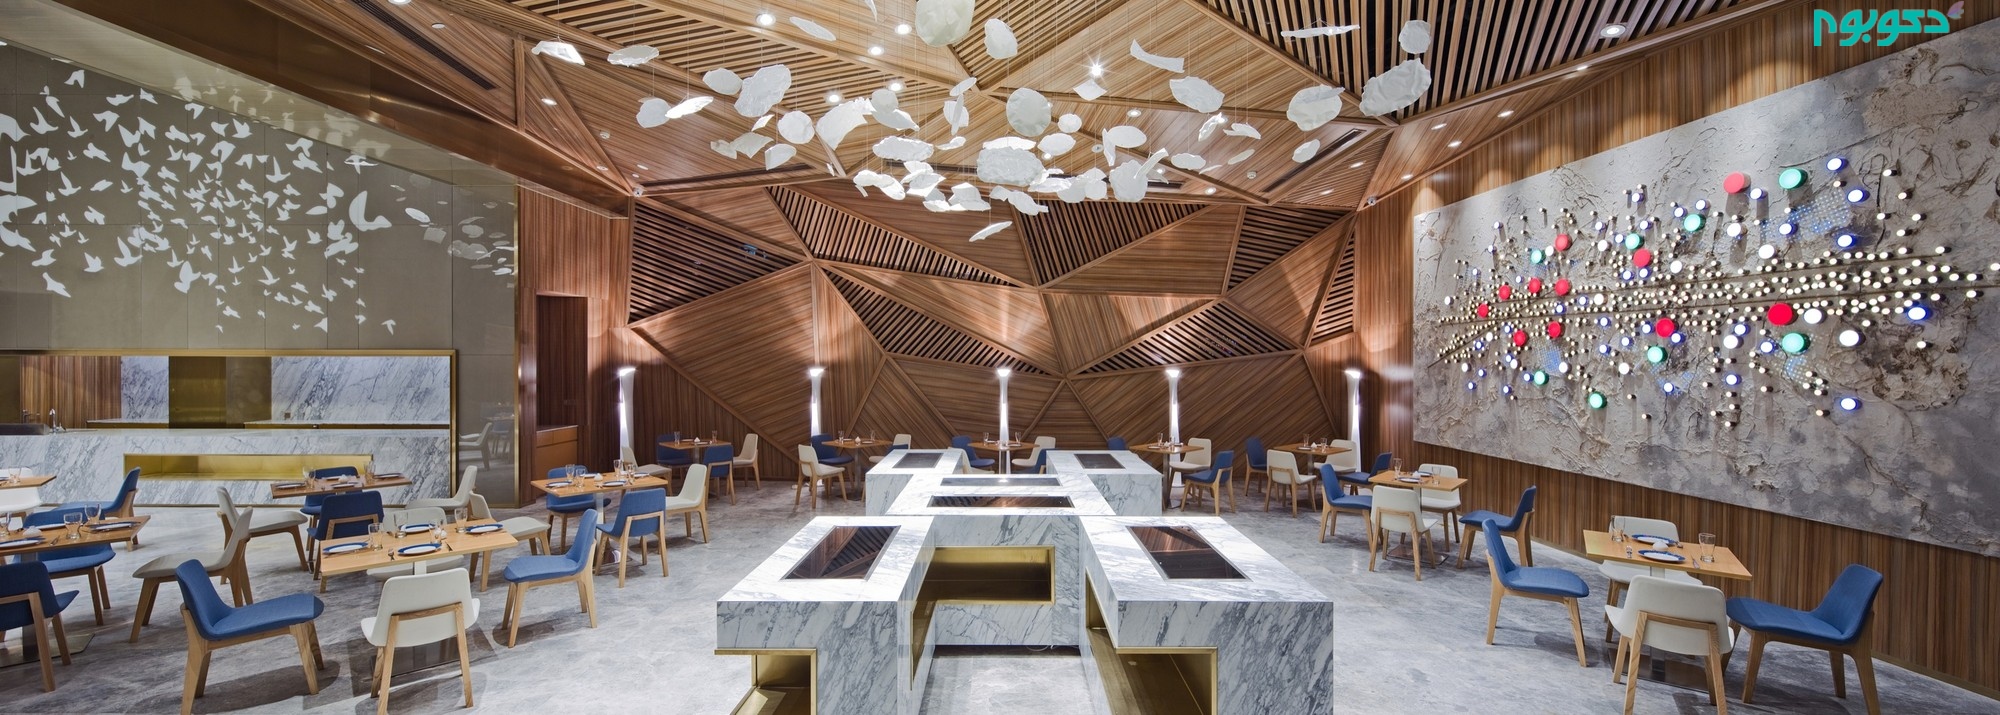 طراحی داخلی رستورانی منحصر به فرد در چین